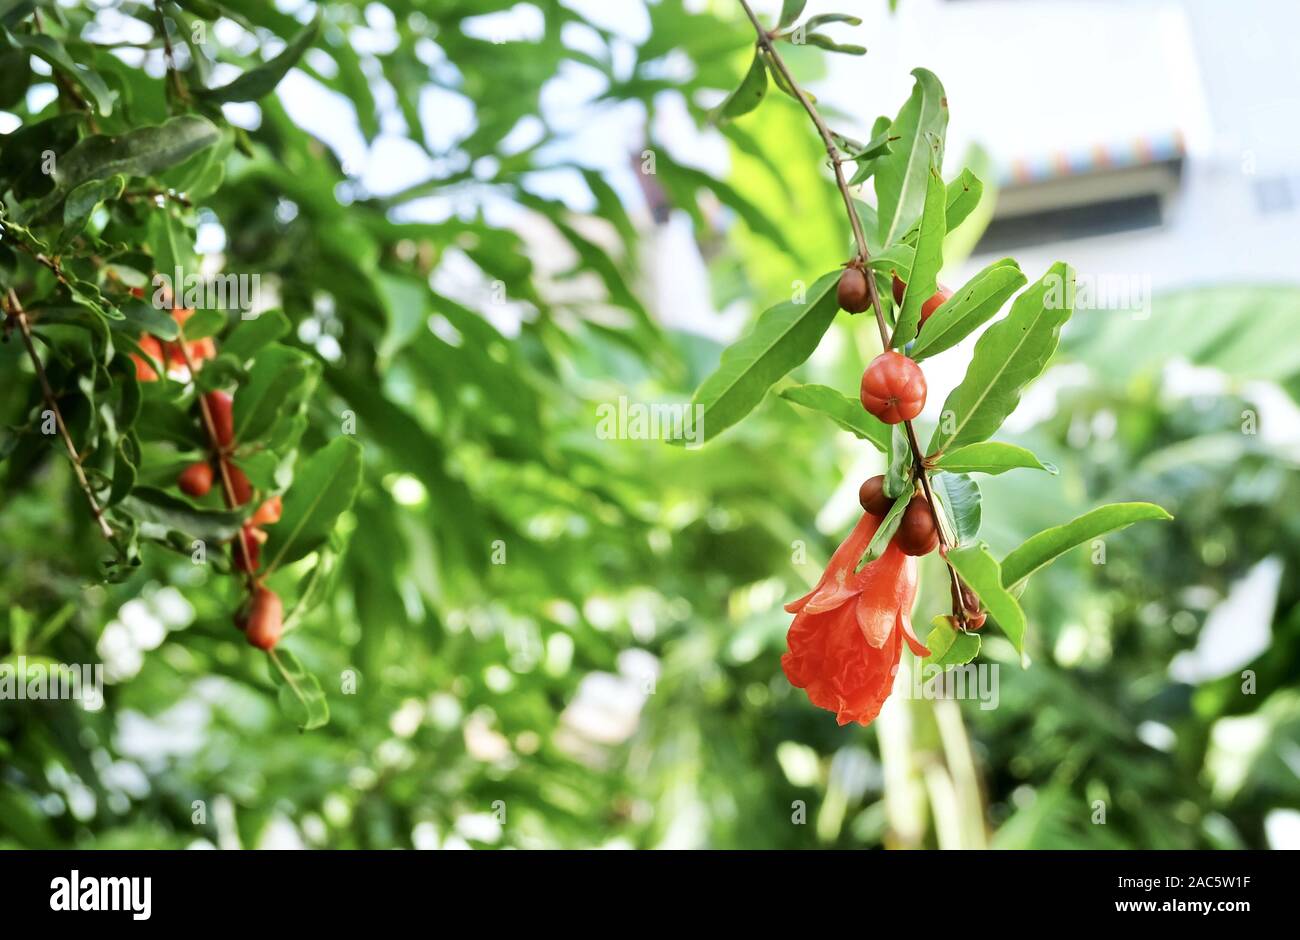 Frische rote Granatapfel oder Punica Granatum Blumen blühen am Baum. Eine der beliebtesten Früchte in der Welt. Stockfoto